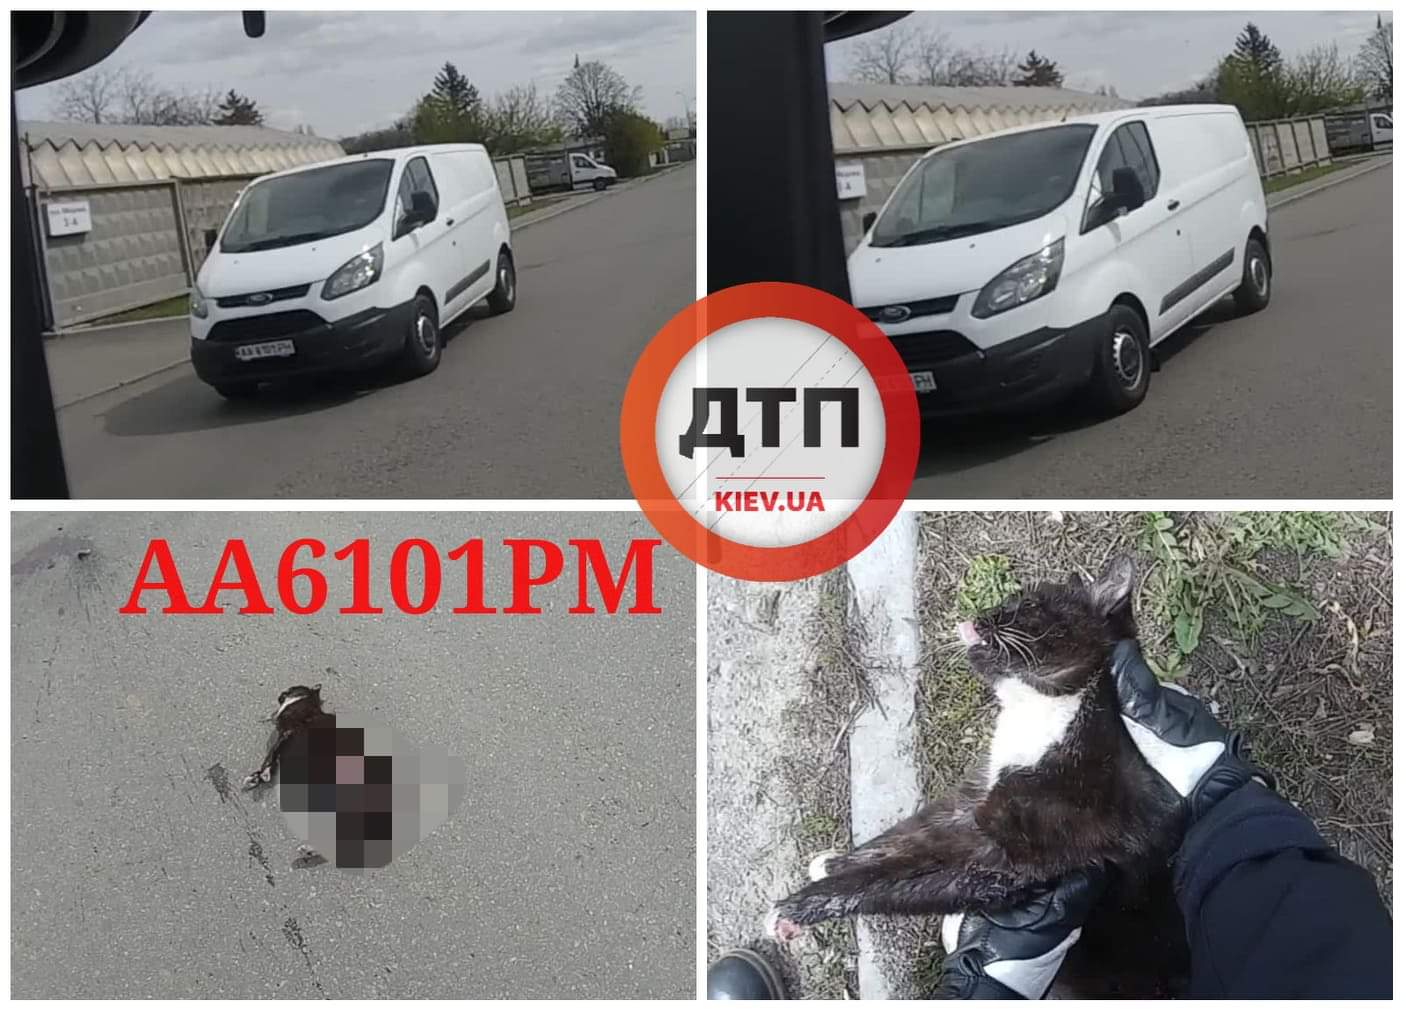 В Киеве на улице Медовая водитель буса Ford АА6101РМ переехал кошку и скрылся с места ДТП. Видео момента наезда